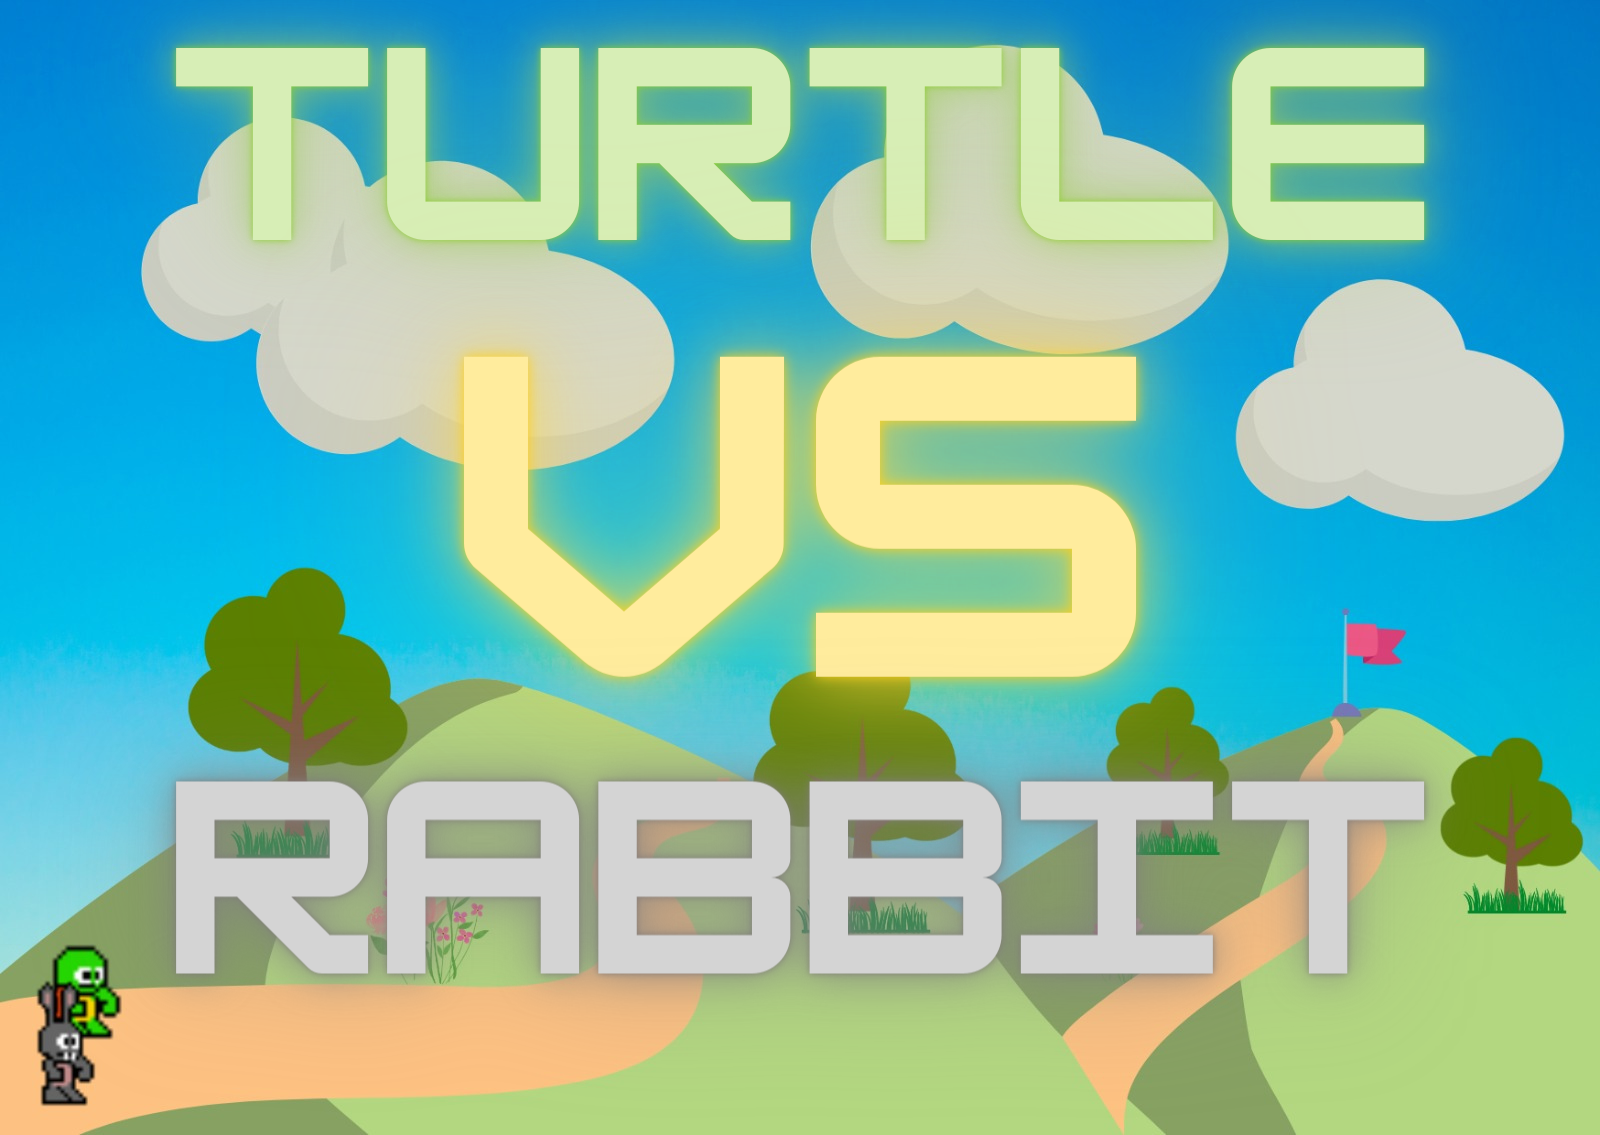 Turtle Vs Rabbit